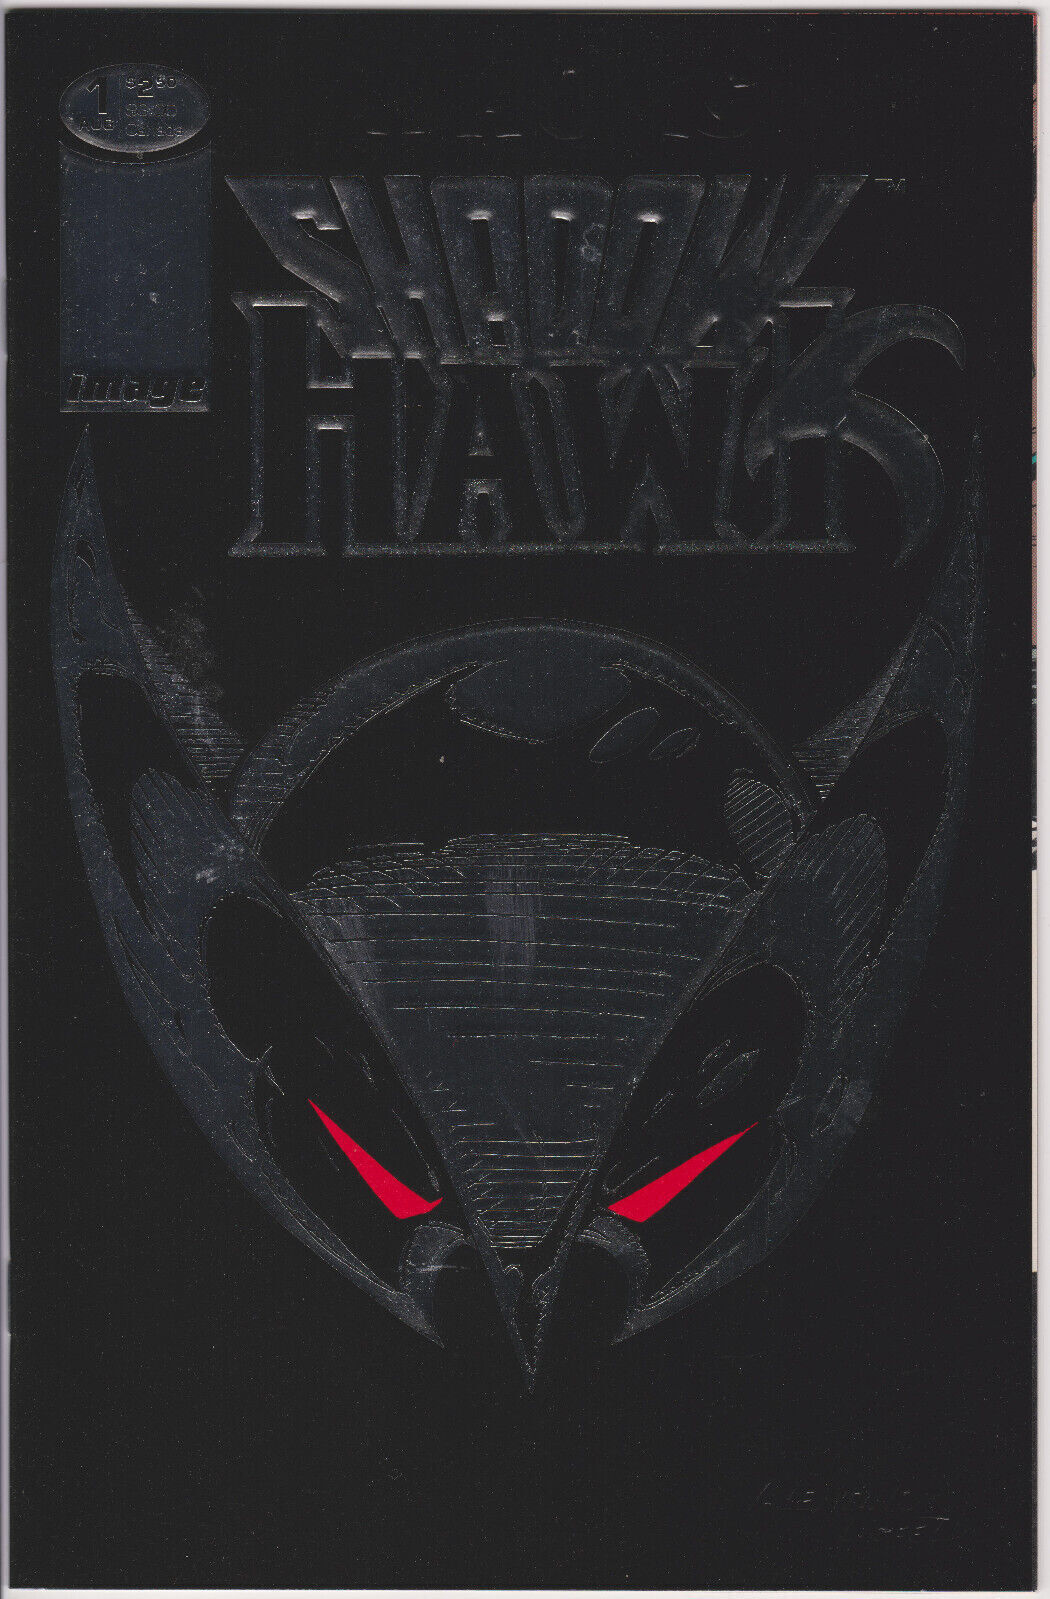 Shadowhawk #1 Vol. 1 (1992-1993) Image Comics, Silver Foil Cover, High Grade